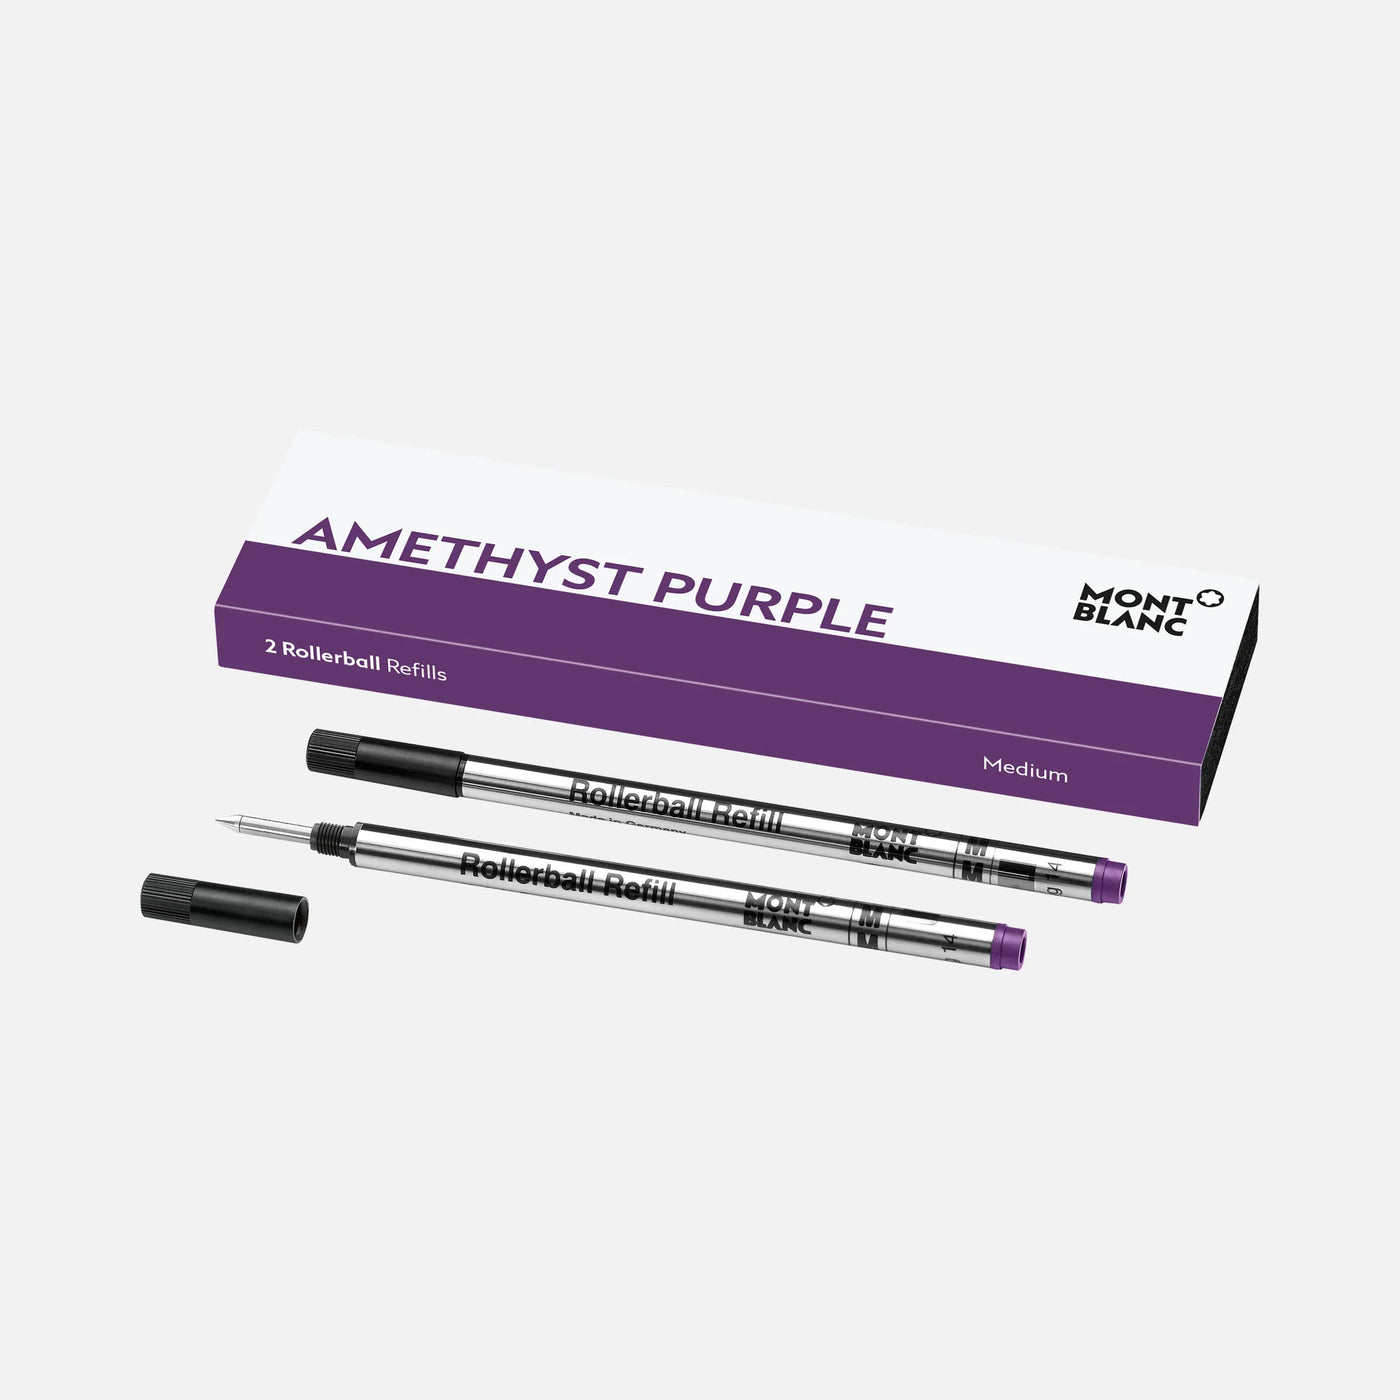 Montblanc Amethyst Purple 2 Rollerball Pen Refills - Medium